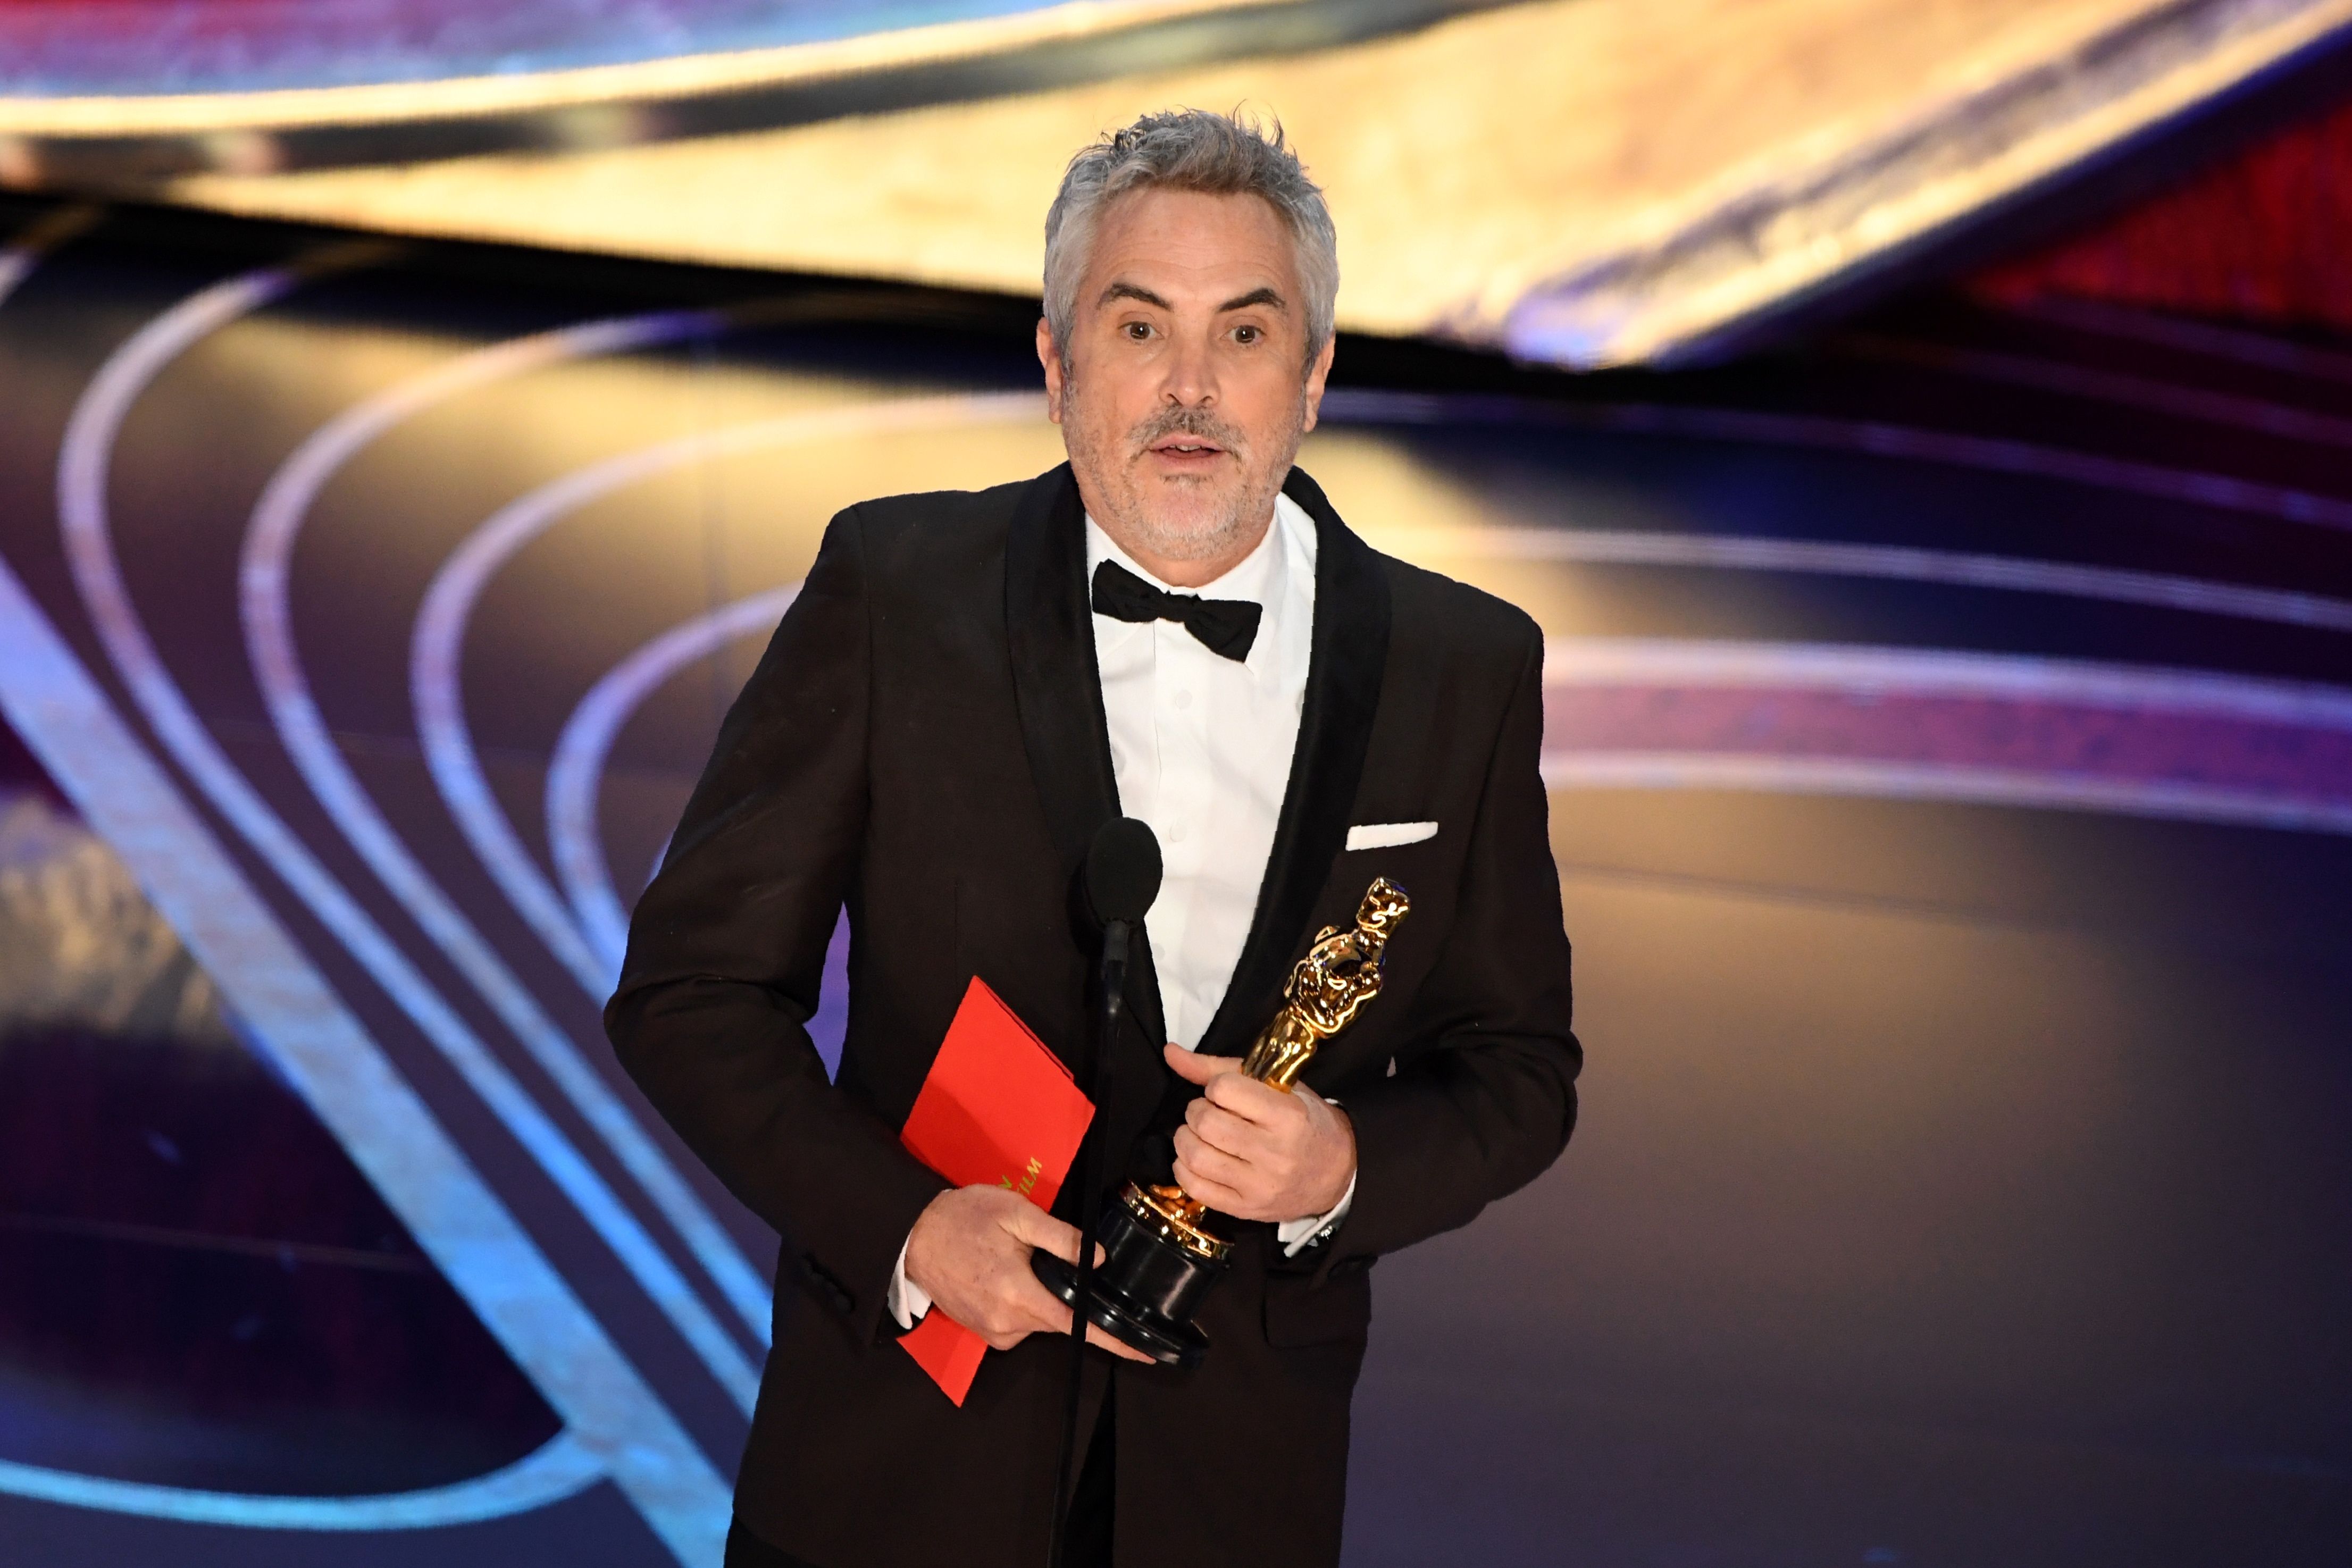 阿方索·卡隆获第91届奥斯卡最佳导演奖和最佳摄影奖